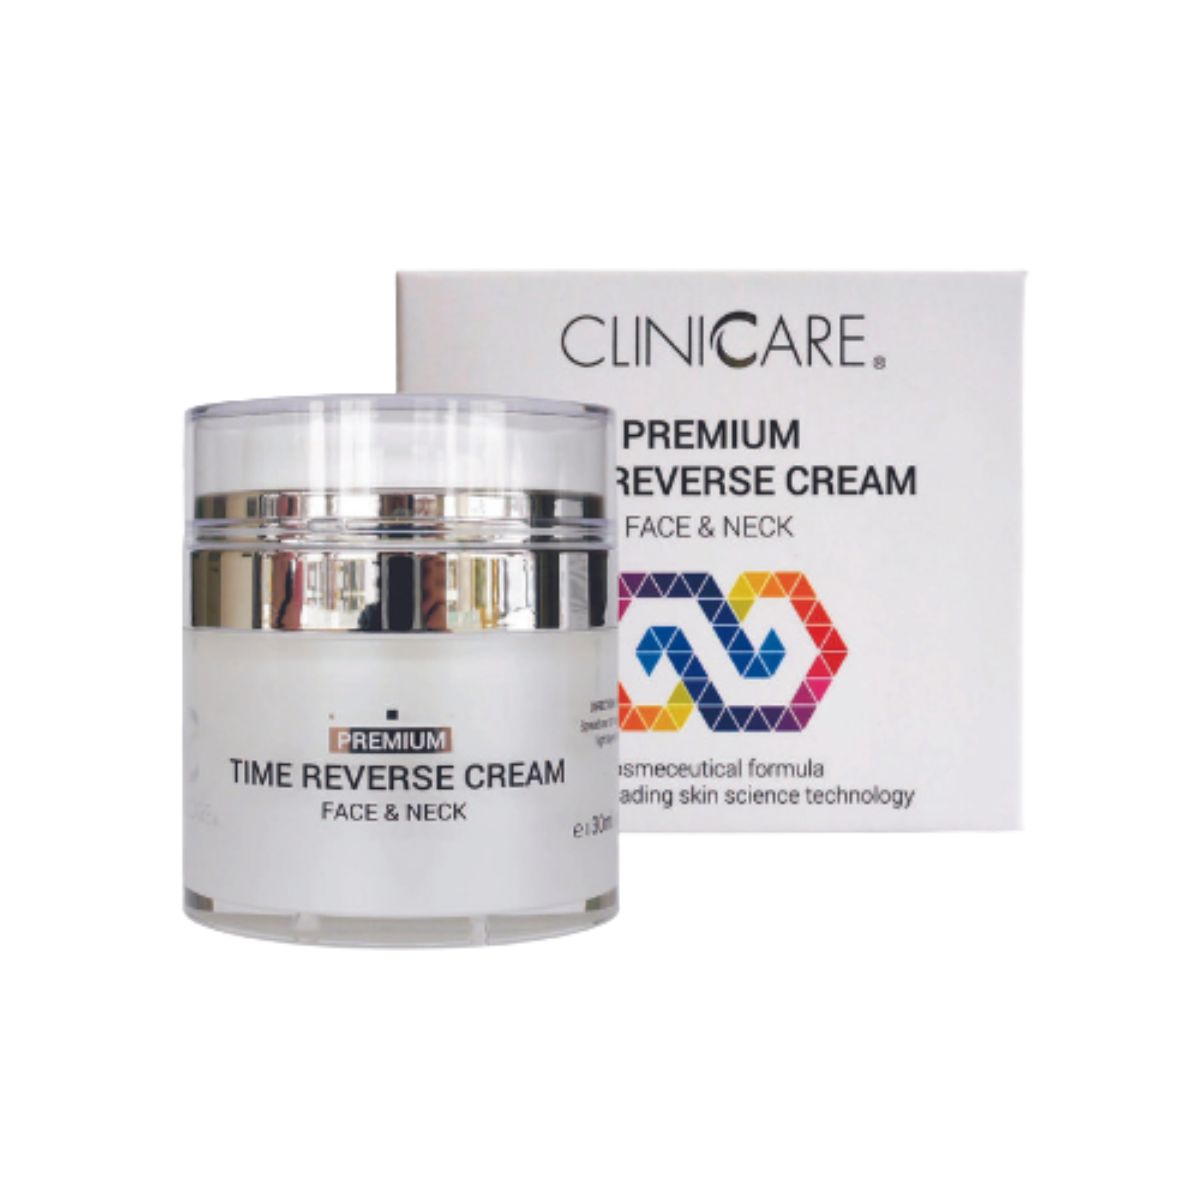 Clinicare Premium Time & Reverse Cream.